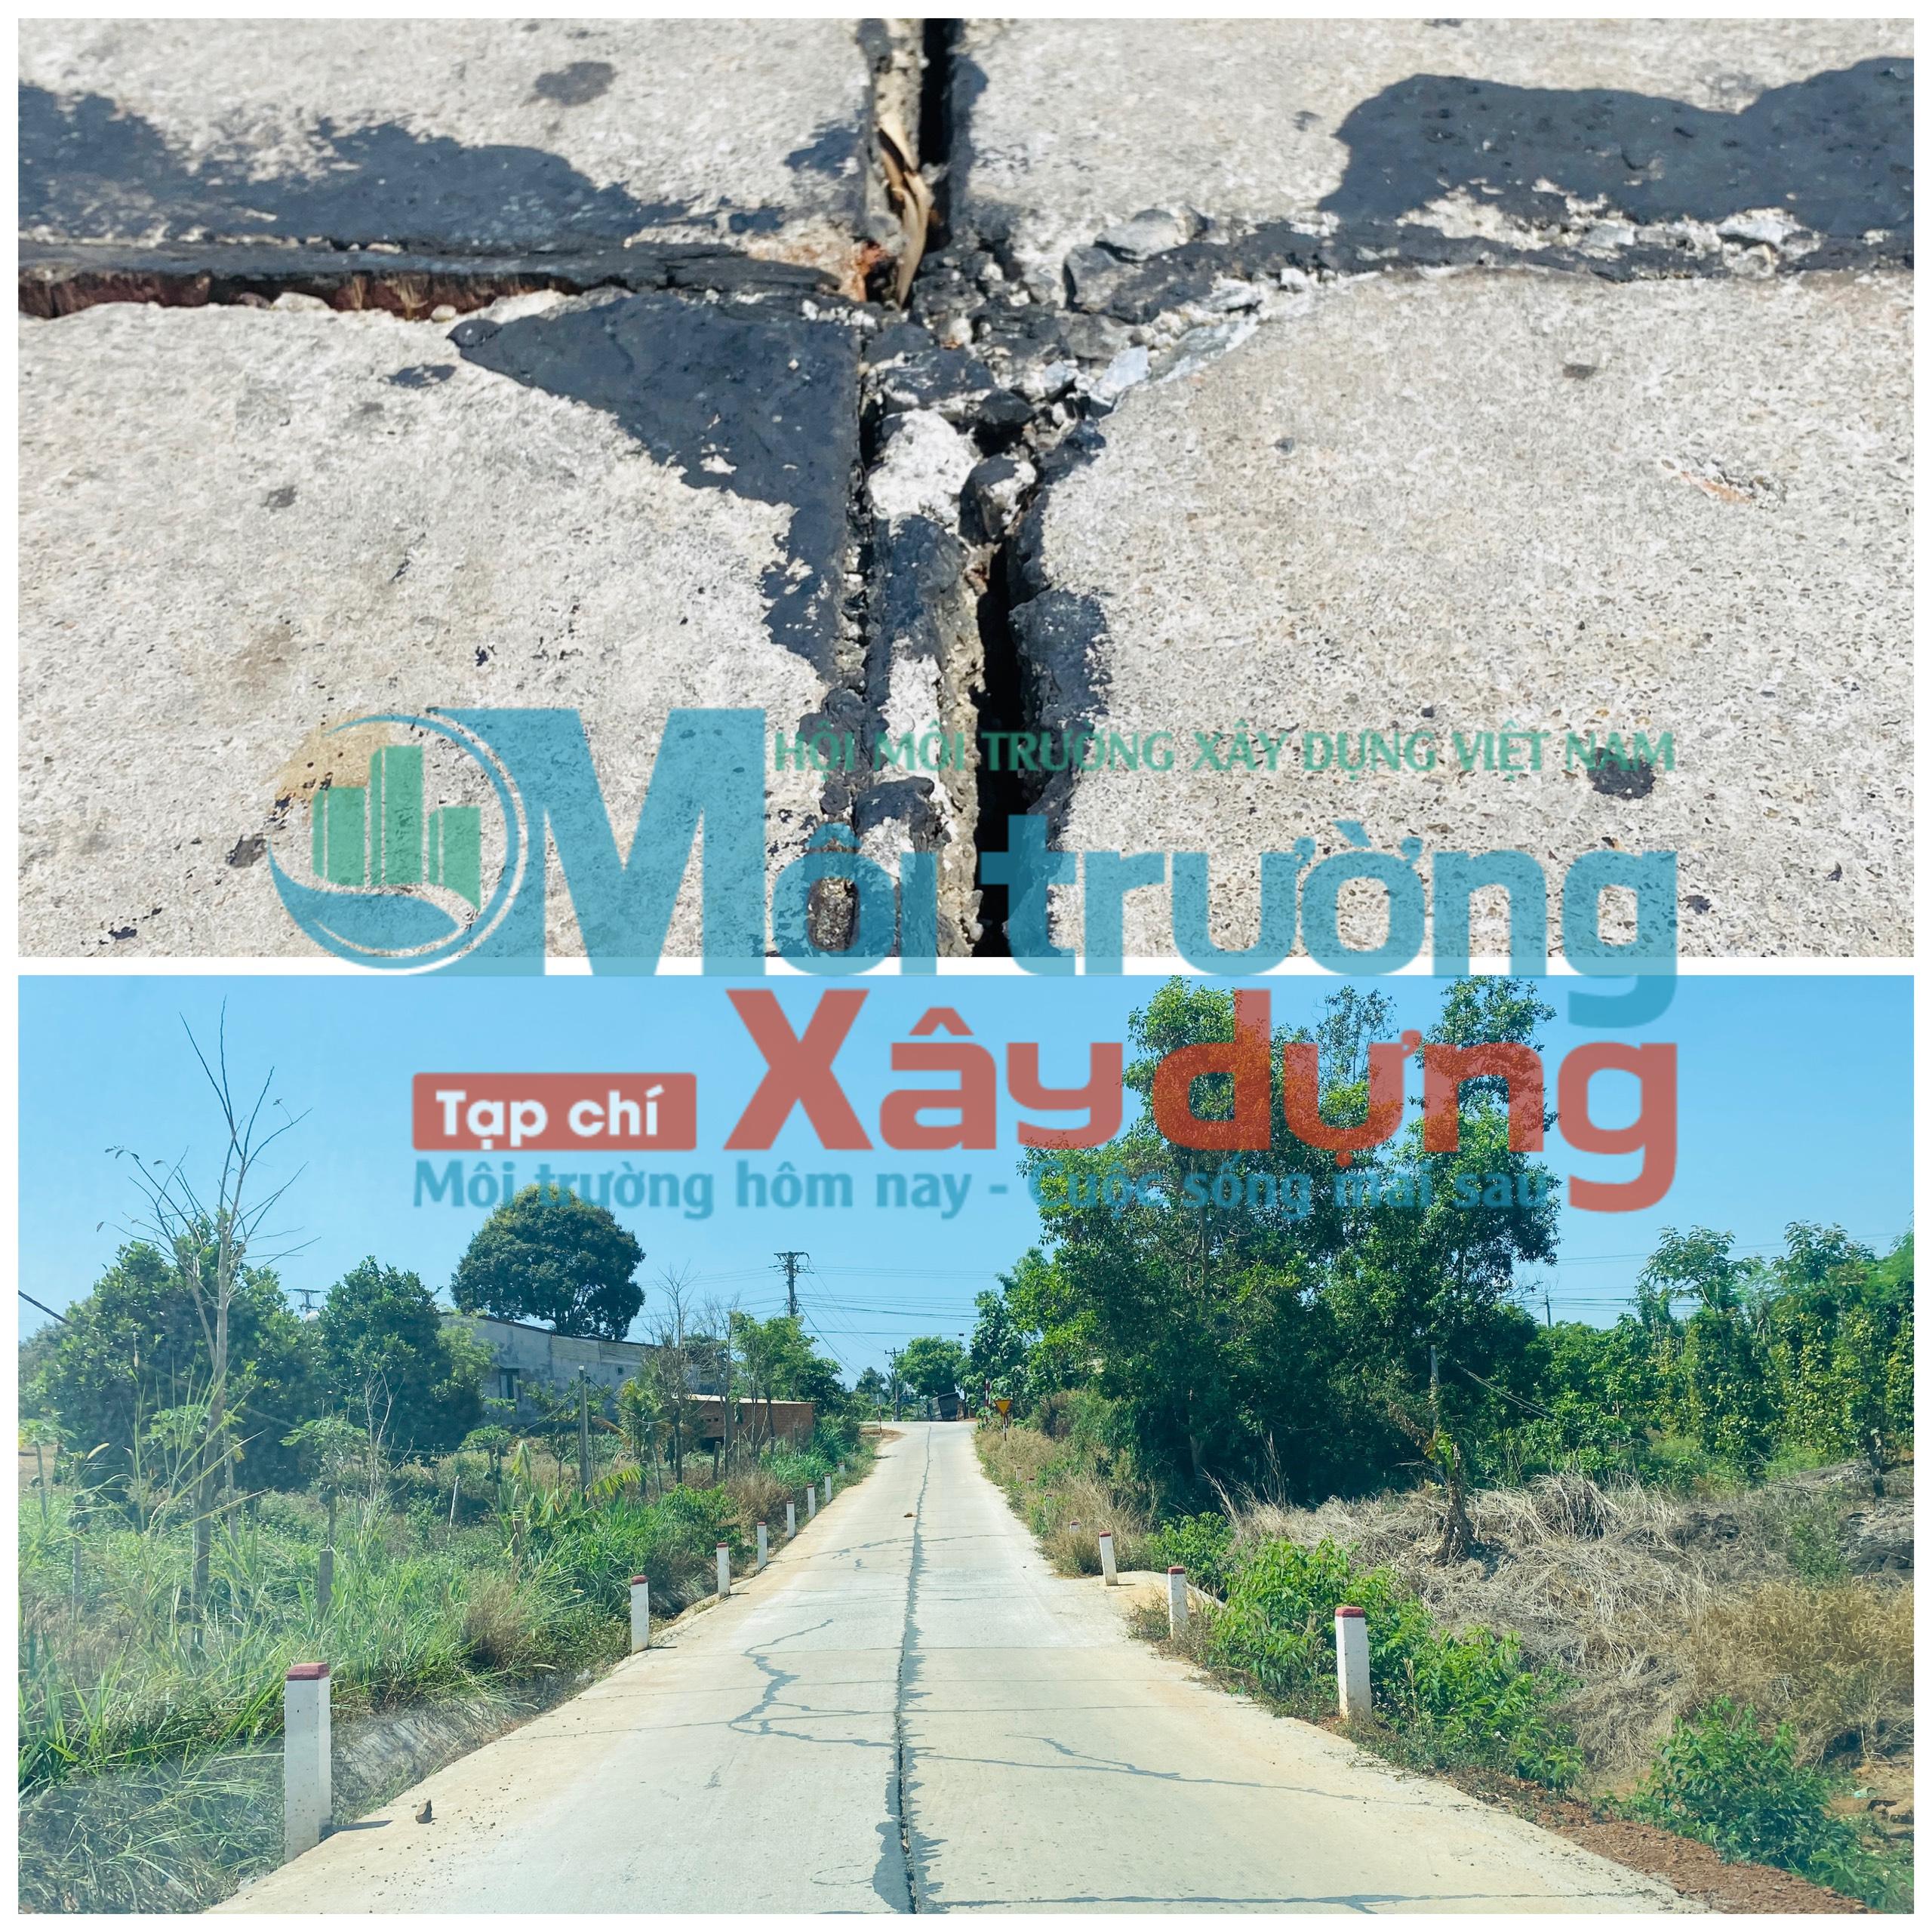 Krông Nô –Đắk Nông: Cần kiểm tra tình trạng xuống cấp tuyến đường giao thông từ thôn Phú Lợi đi thôn Phú Hòa